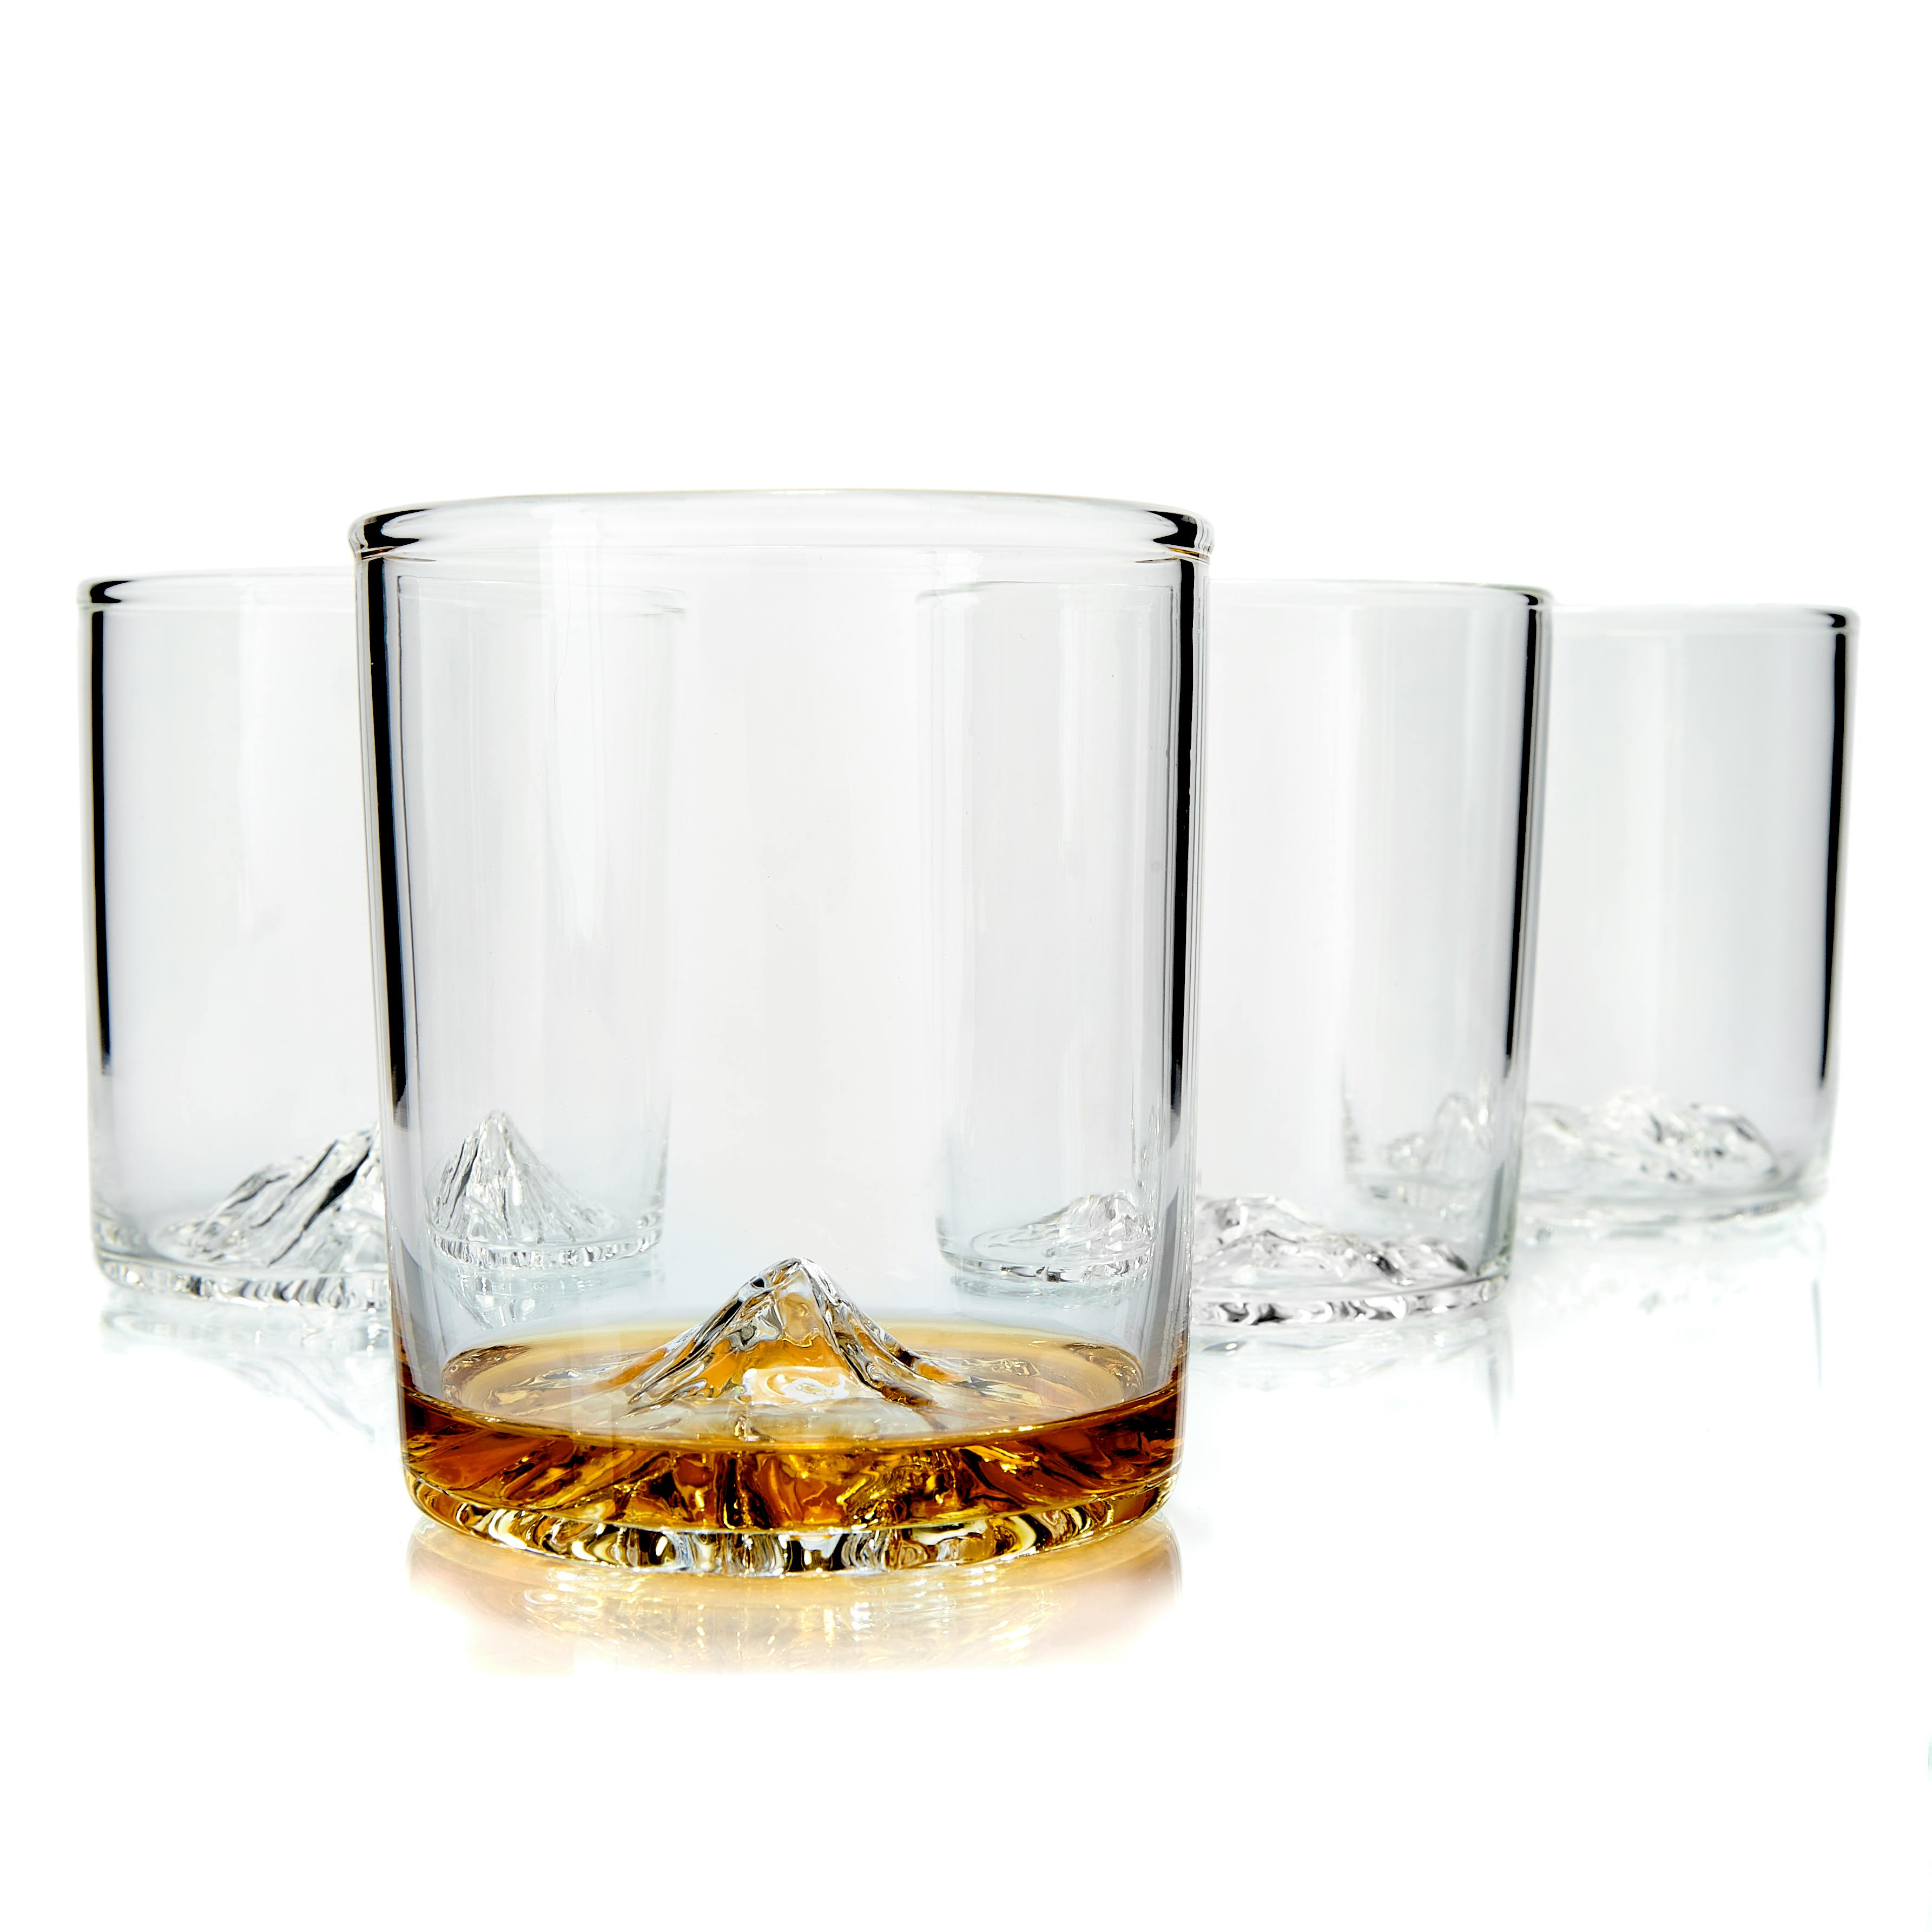 How Do You Choose a Whiskey Glass? - Glass.com